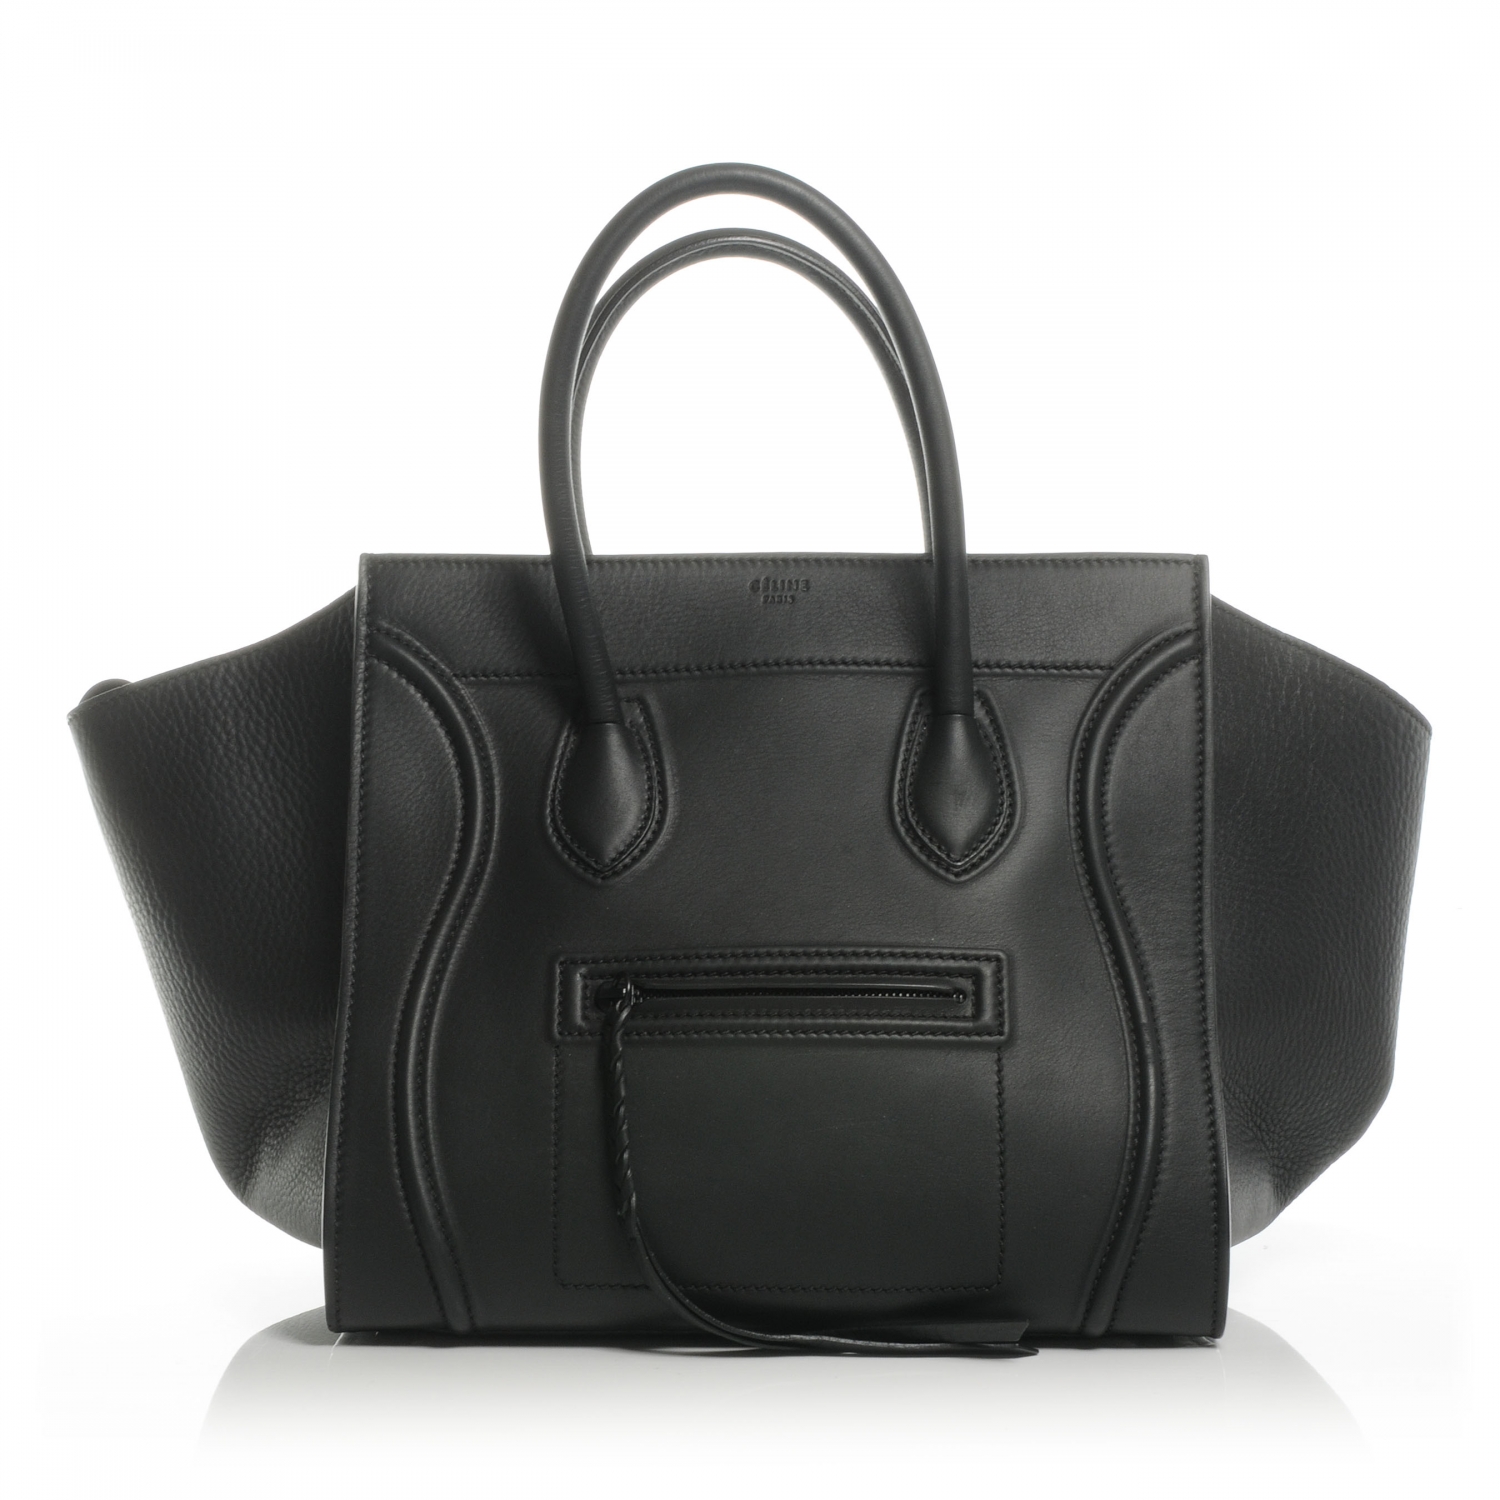 CELINE Smooth Leather Medium Phantom Luggage Black 44384